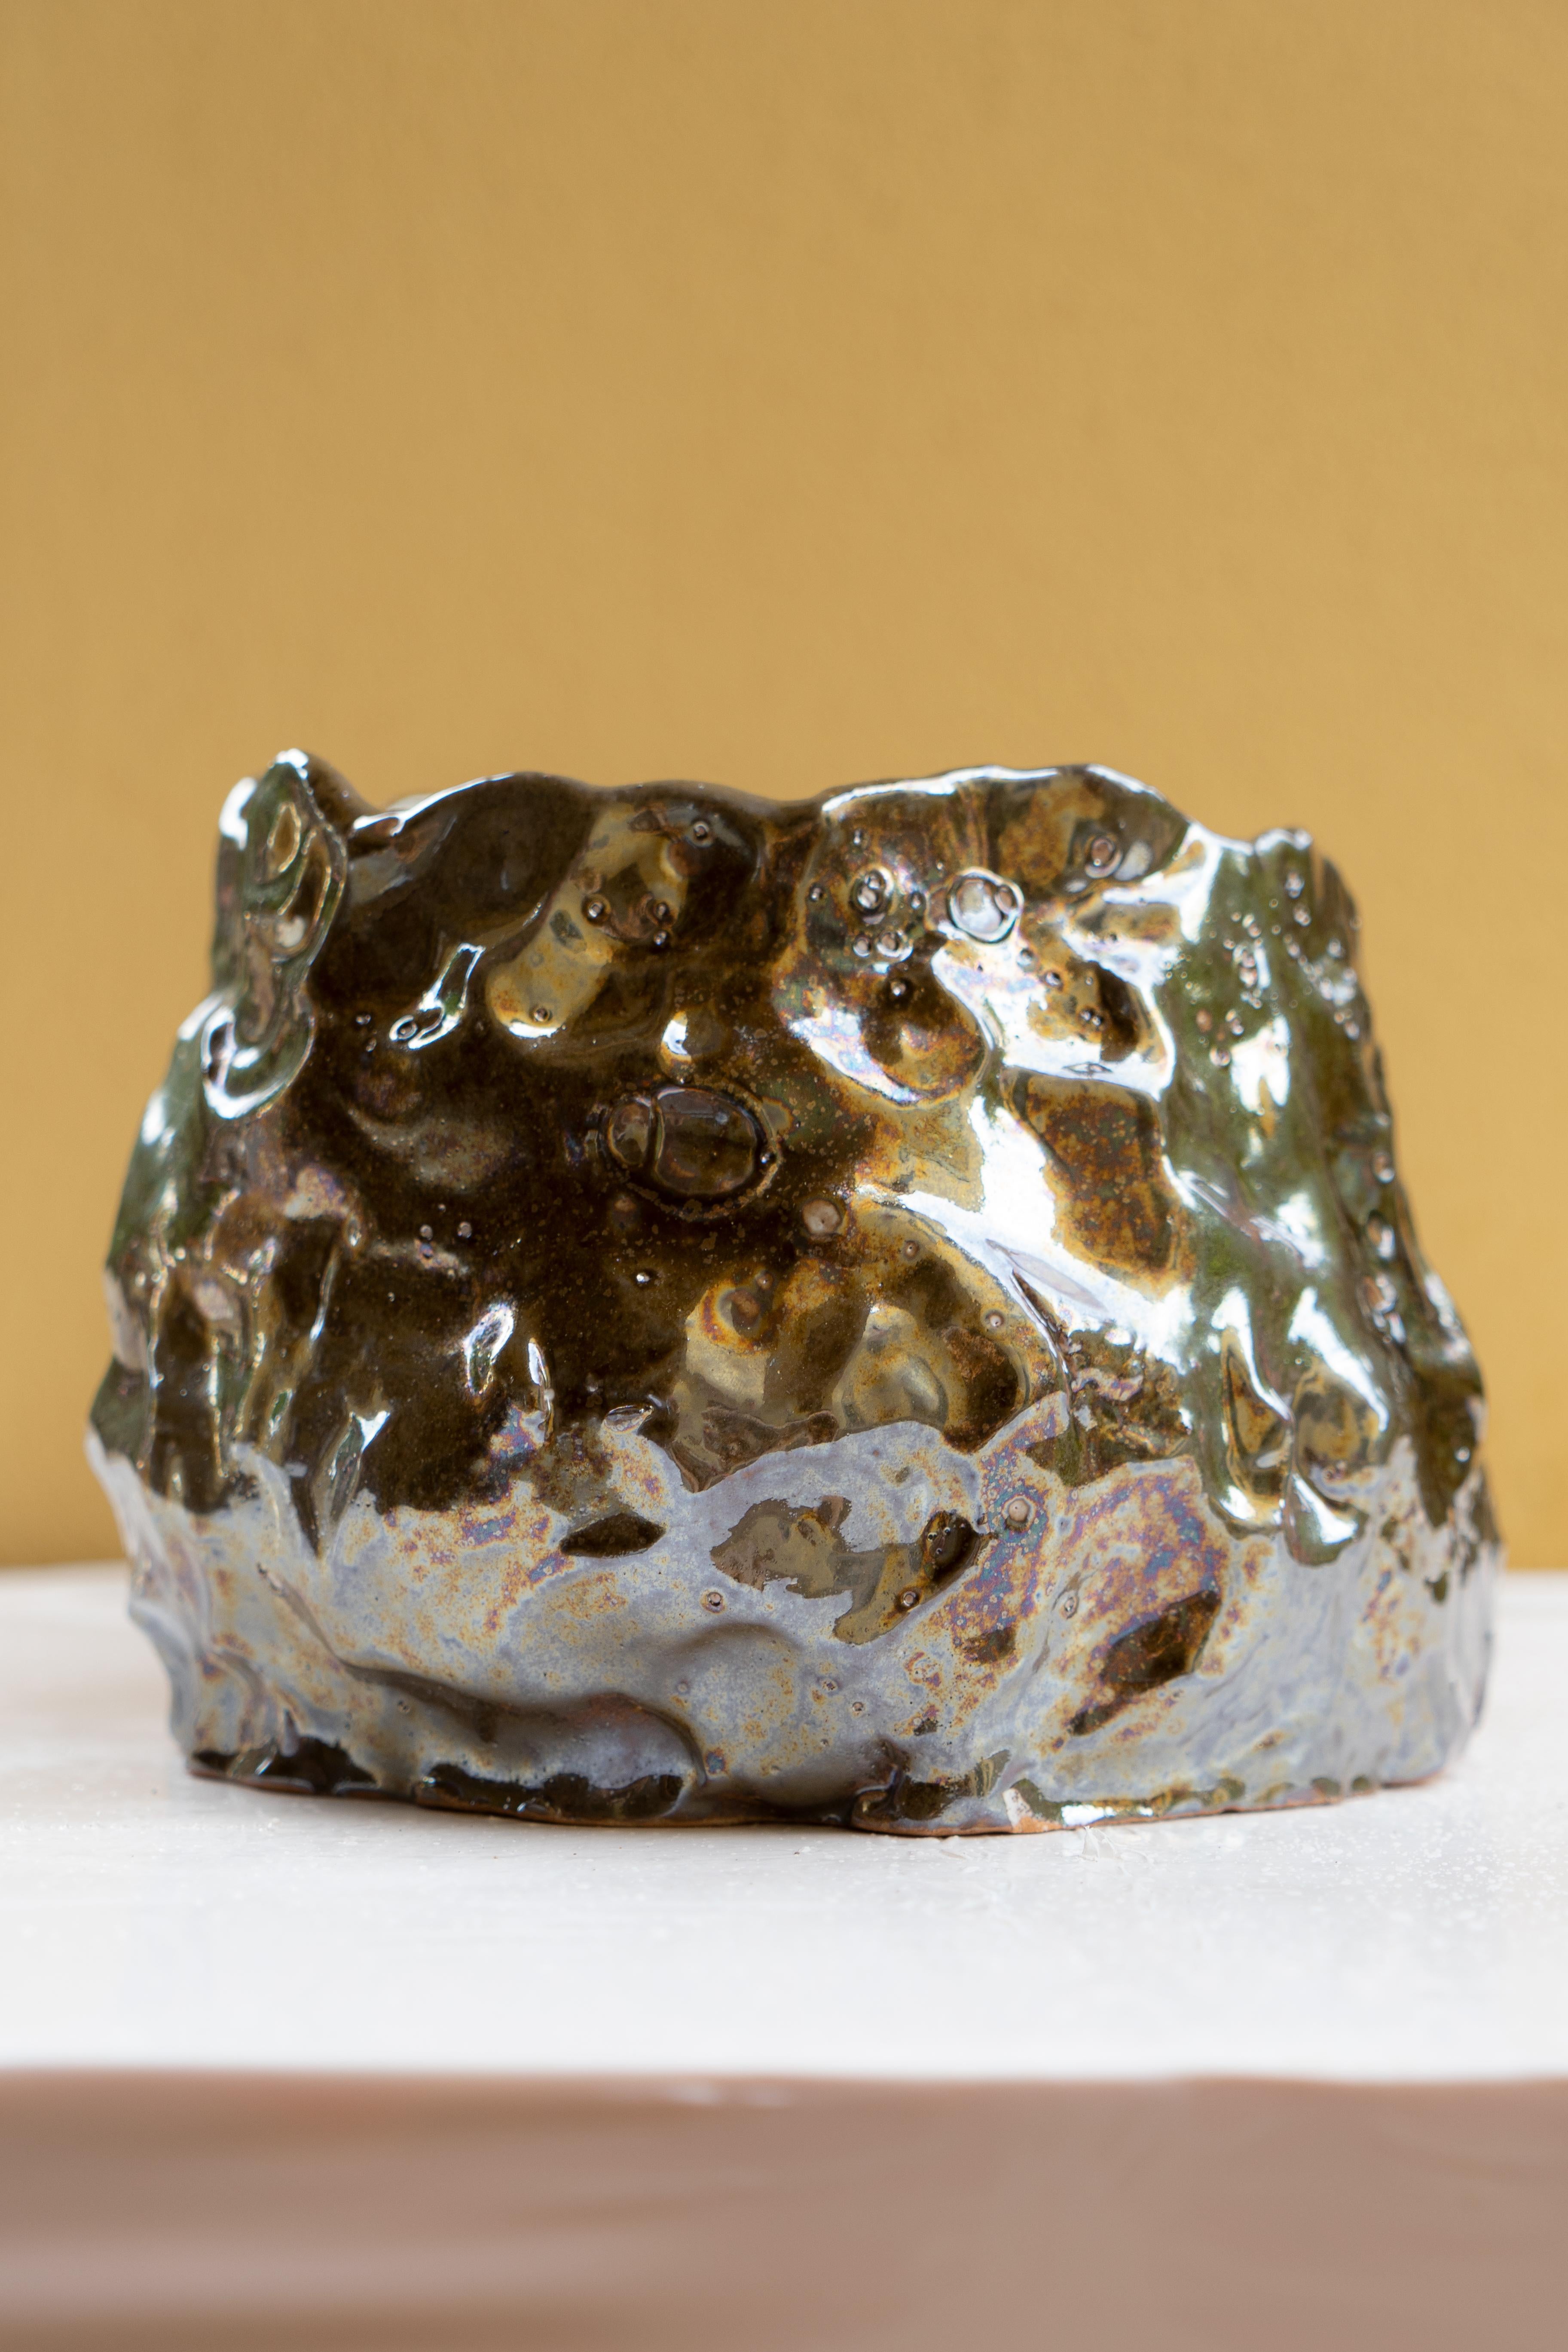 Vase en bronze irisé de Daniele Giannetti
Dimensions : Ø 25 x H 18 cm.
Matériaux : Terre cuite émaillée. 

Toutes les pièces sont réalisées en terre cuite de Montelupo, cuites une seule fois, puis colorées par Daniele Giannetti avec une base